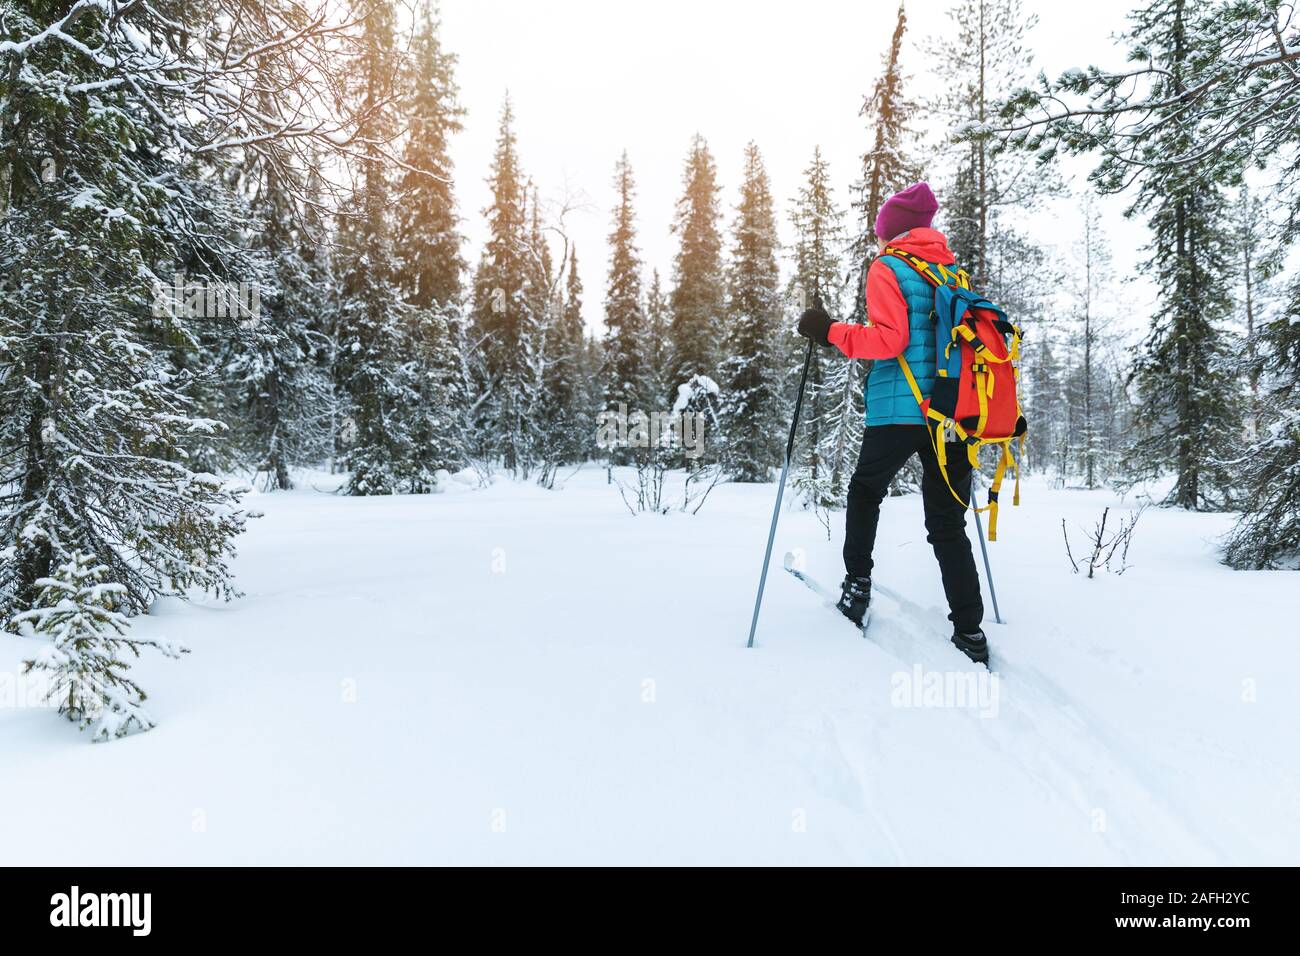 ski touring in the deep fresh snow, Yllas, Lapland, Finland Stock Photo